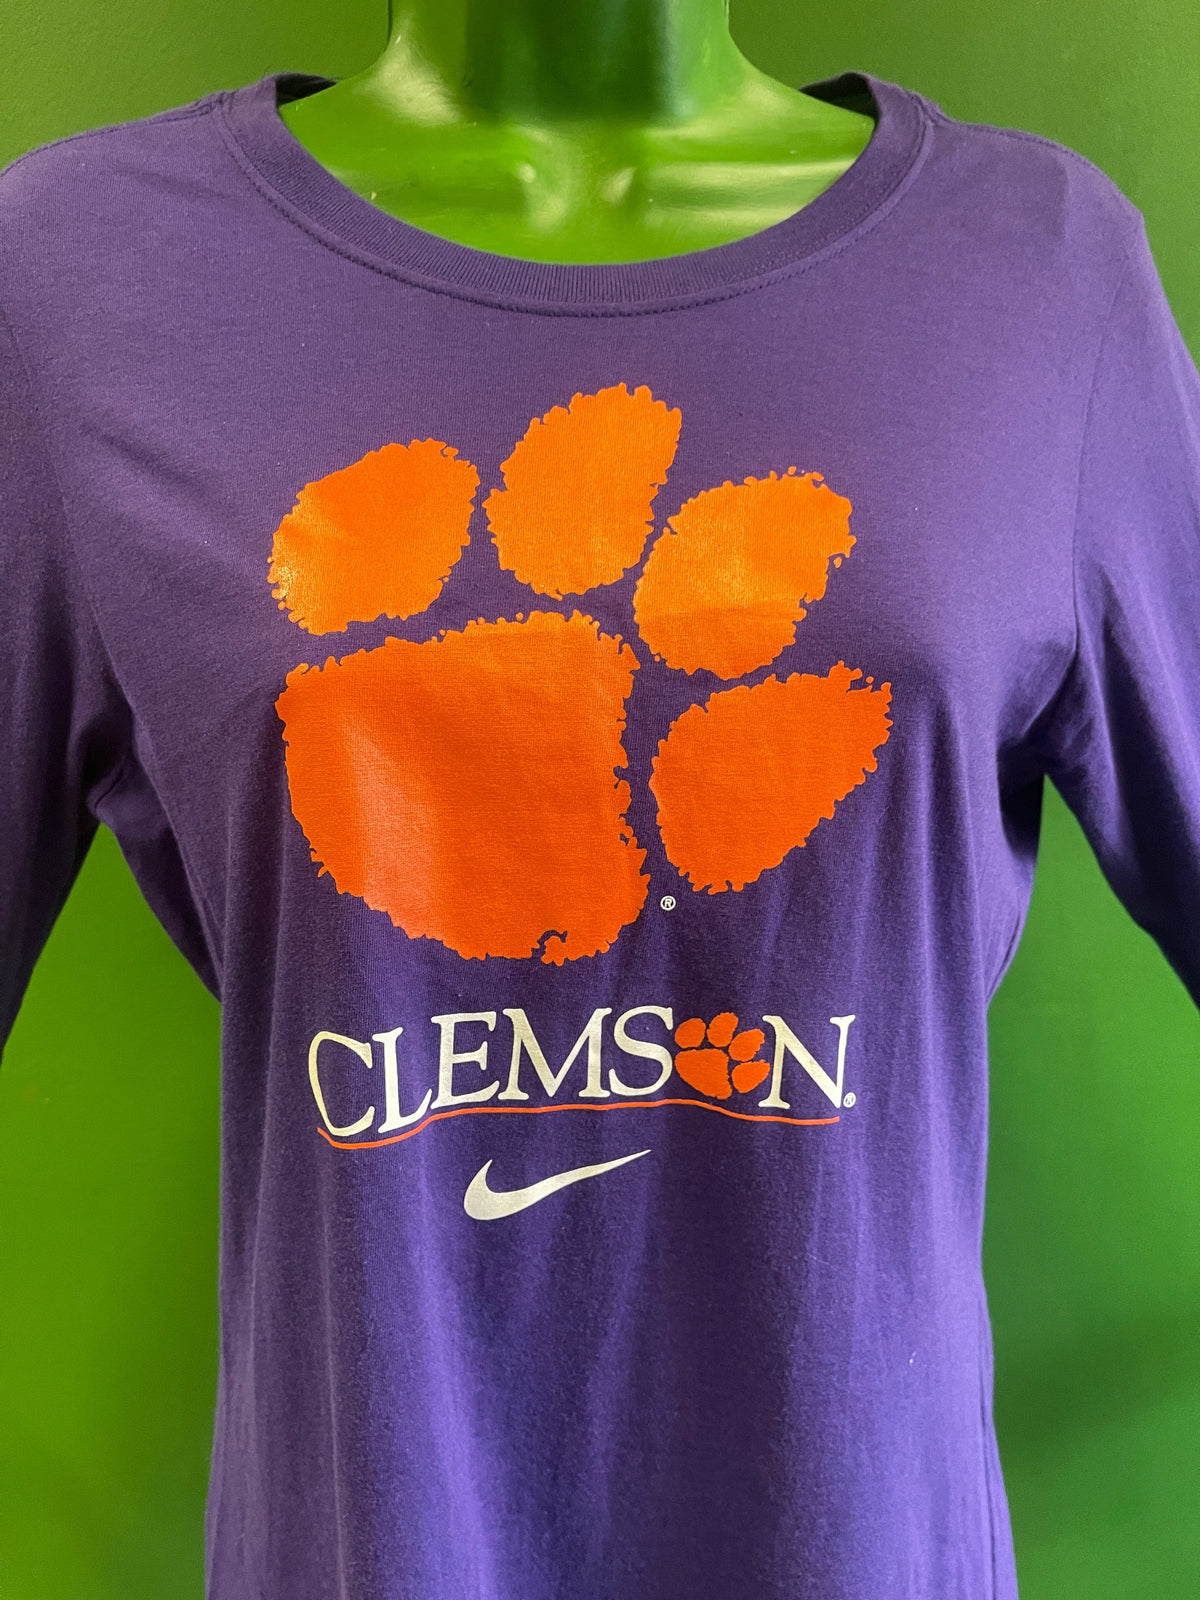 NCAA Clemson Tigers Slim Fit L/S T-Shirt Women's Medium NWT